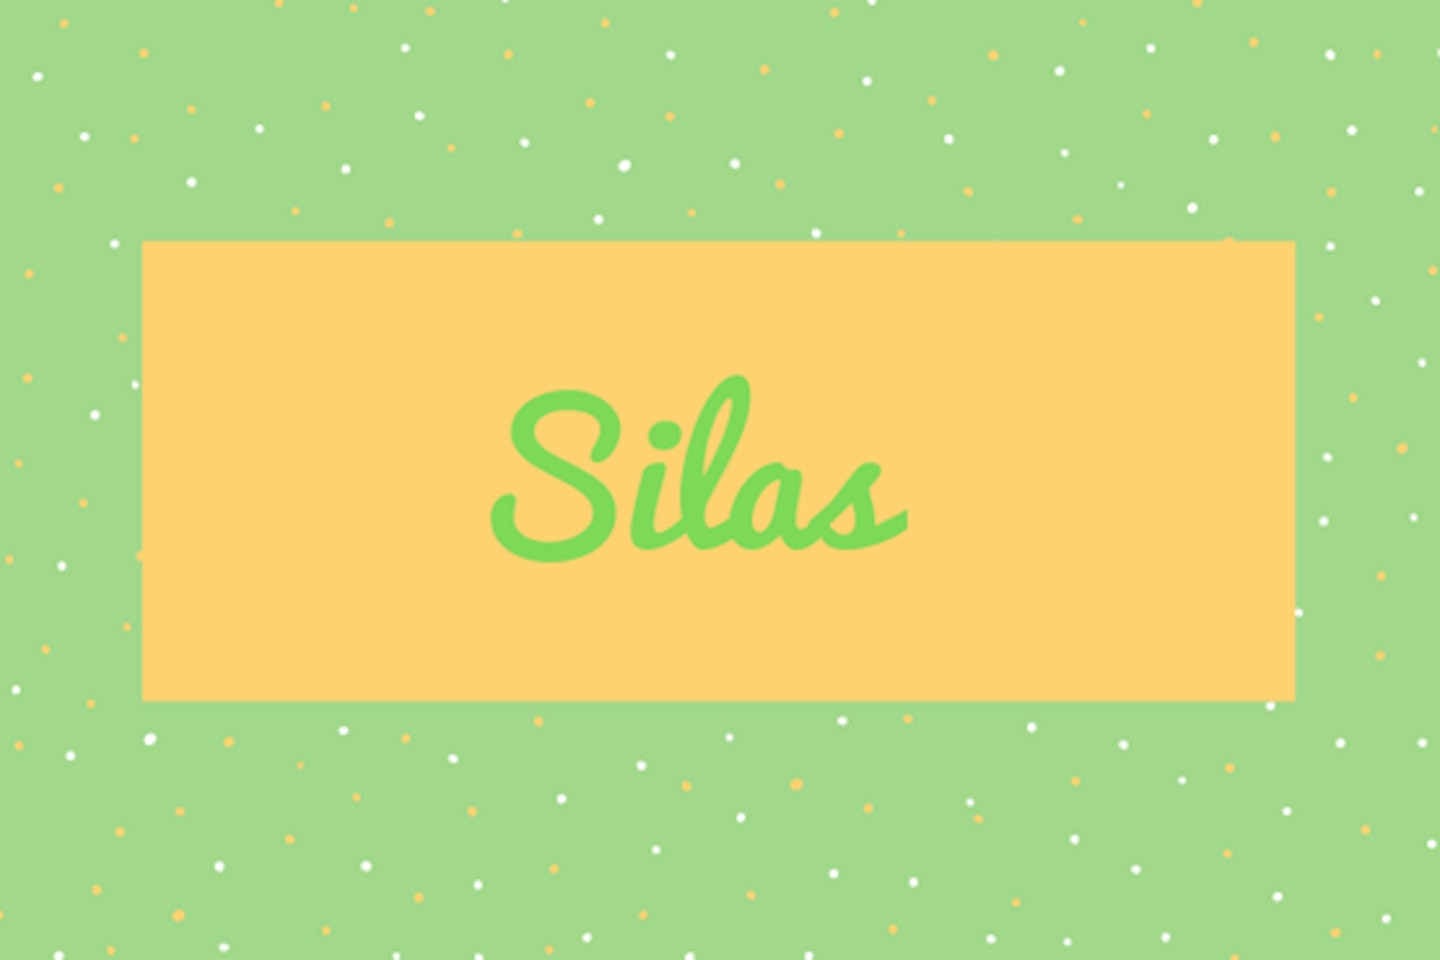 12) Silas